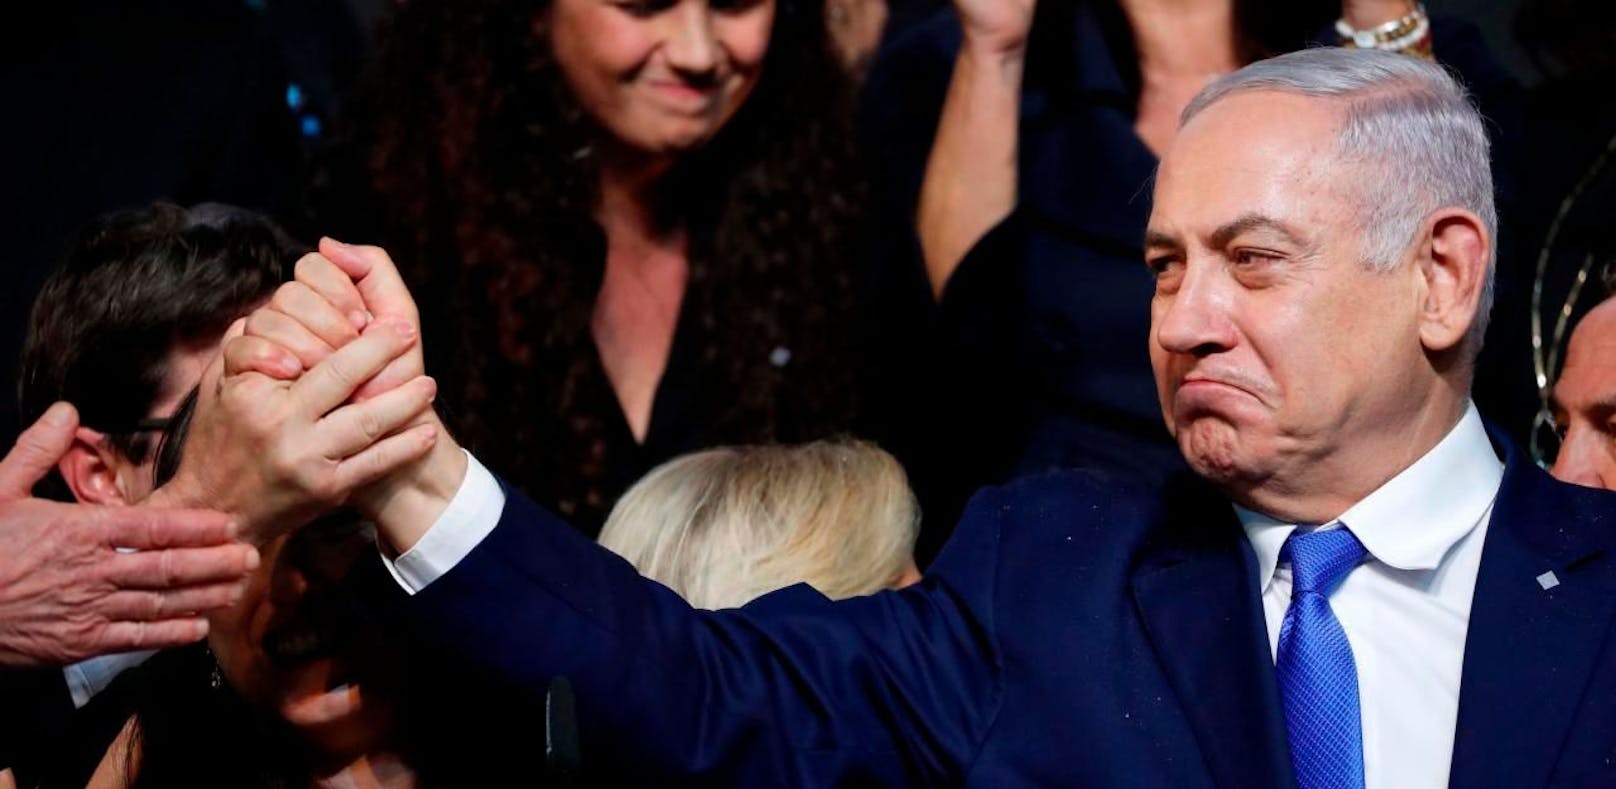 Netanyahu gewinnt mit hauchdünner Mehrheit